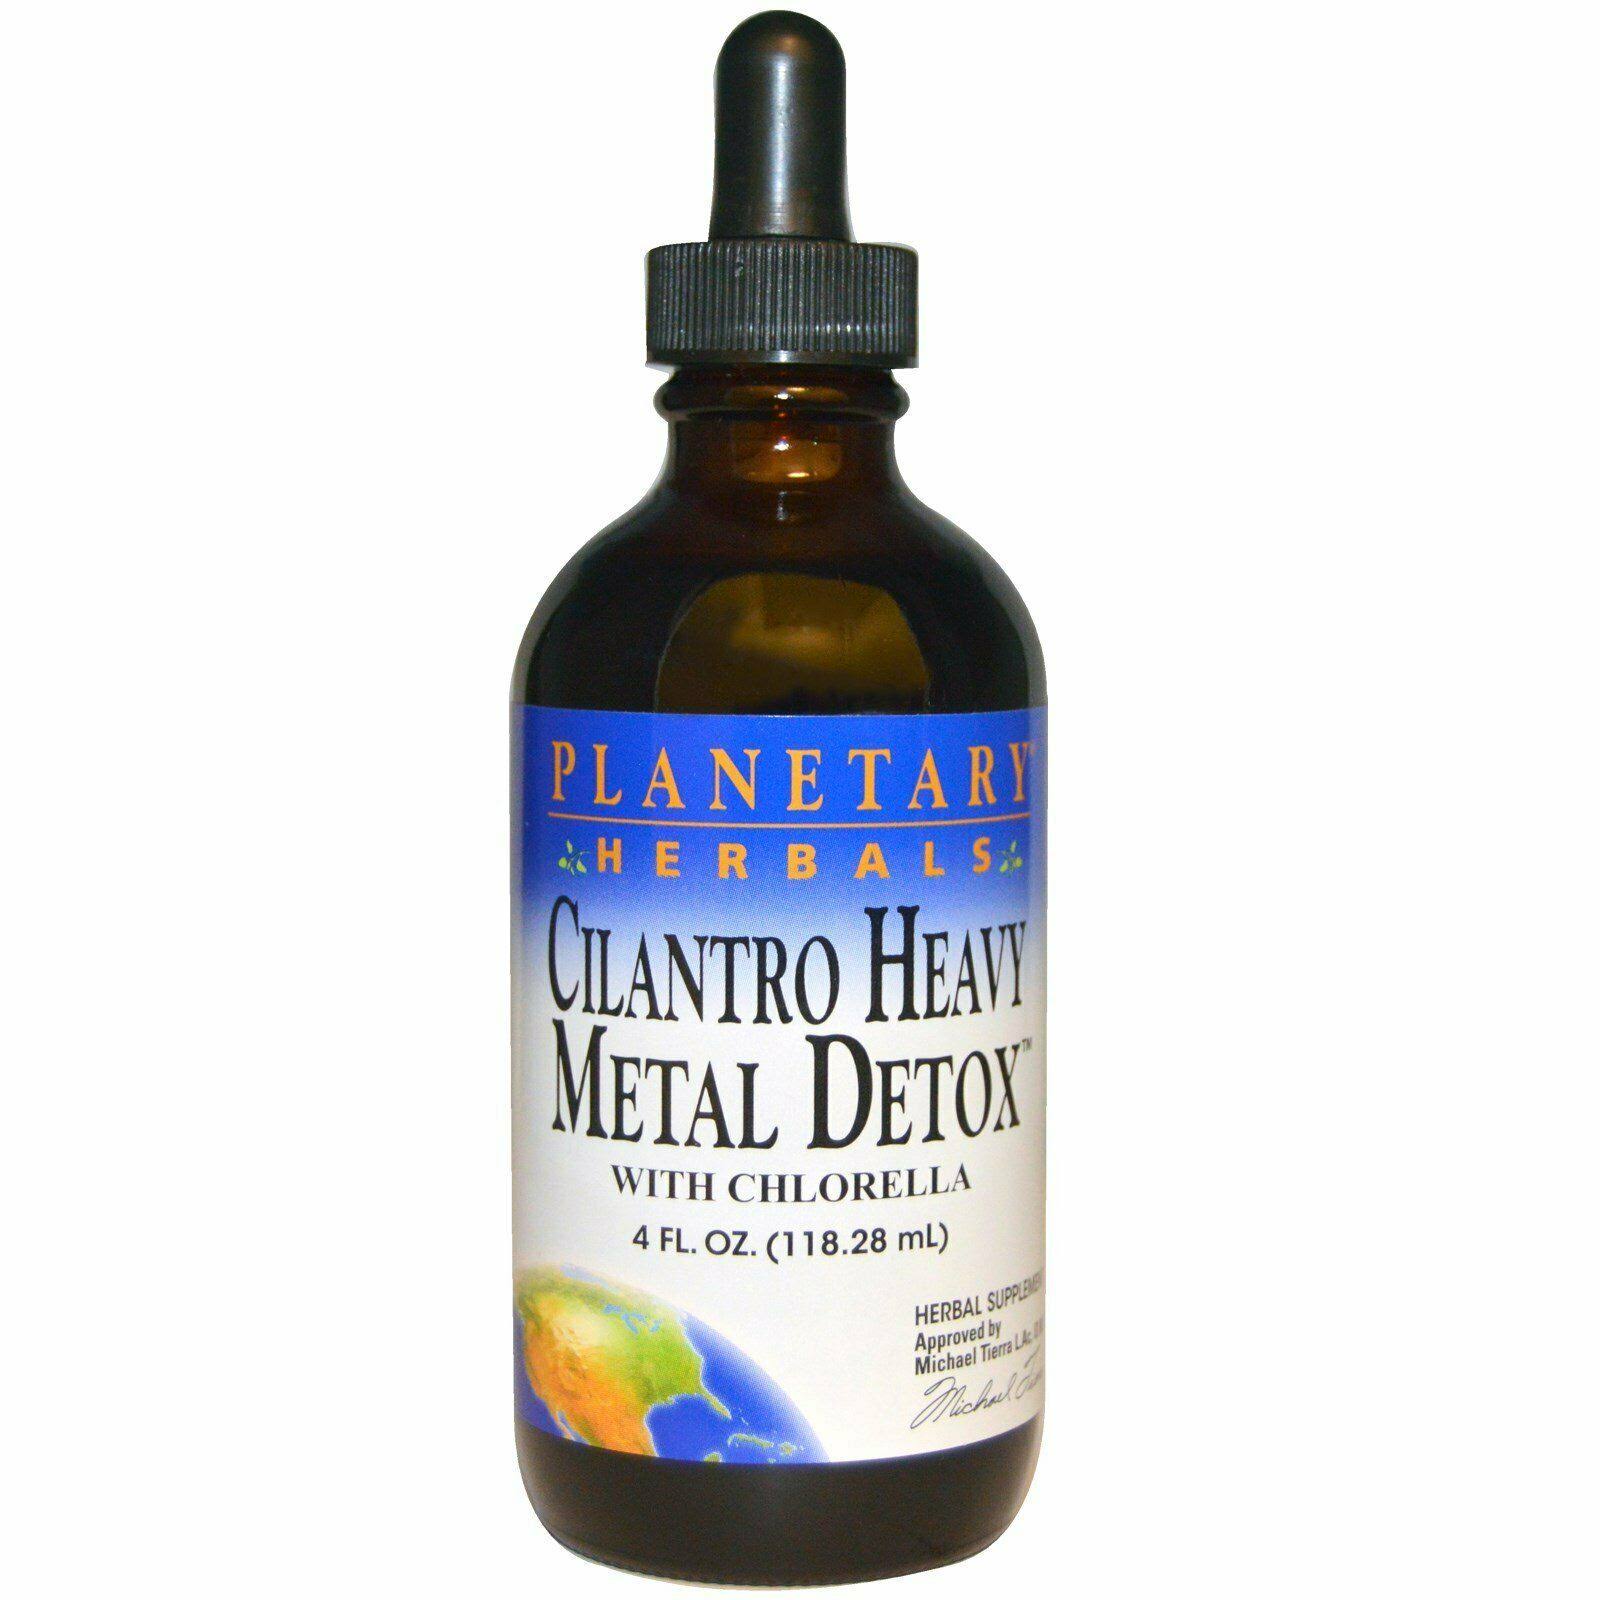 Planetary Herbals Cilantro Heavy Metal Detox Liquid with Chlorella - 4oz